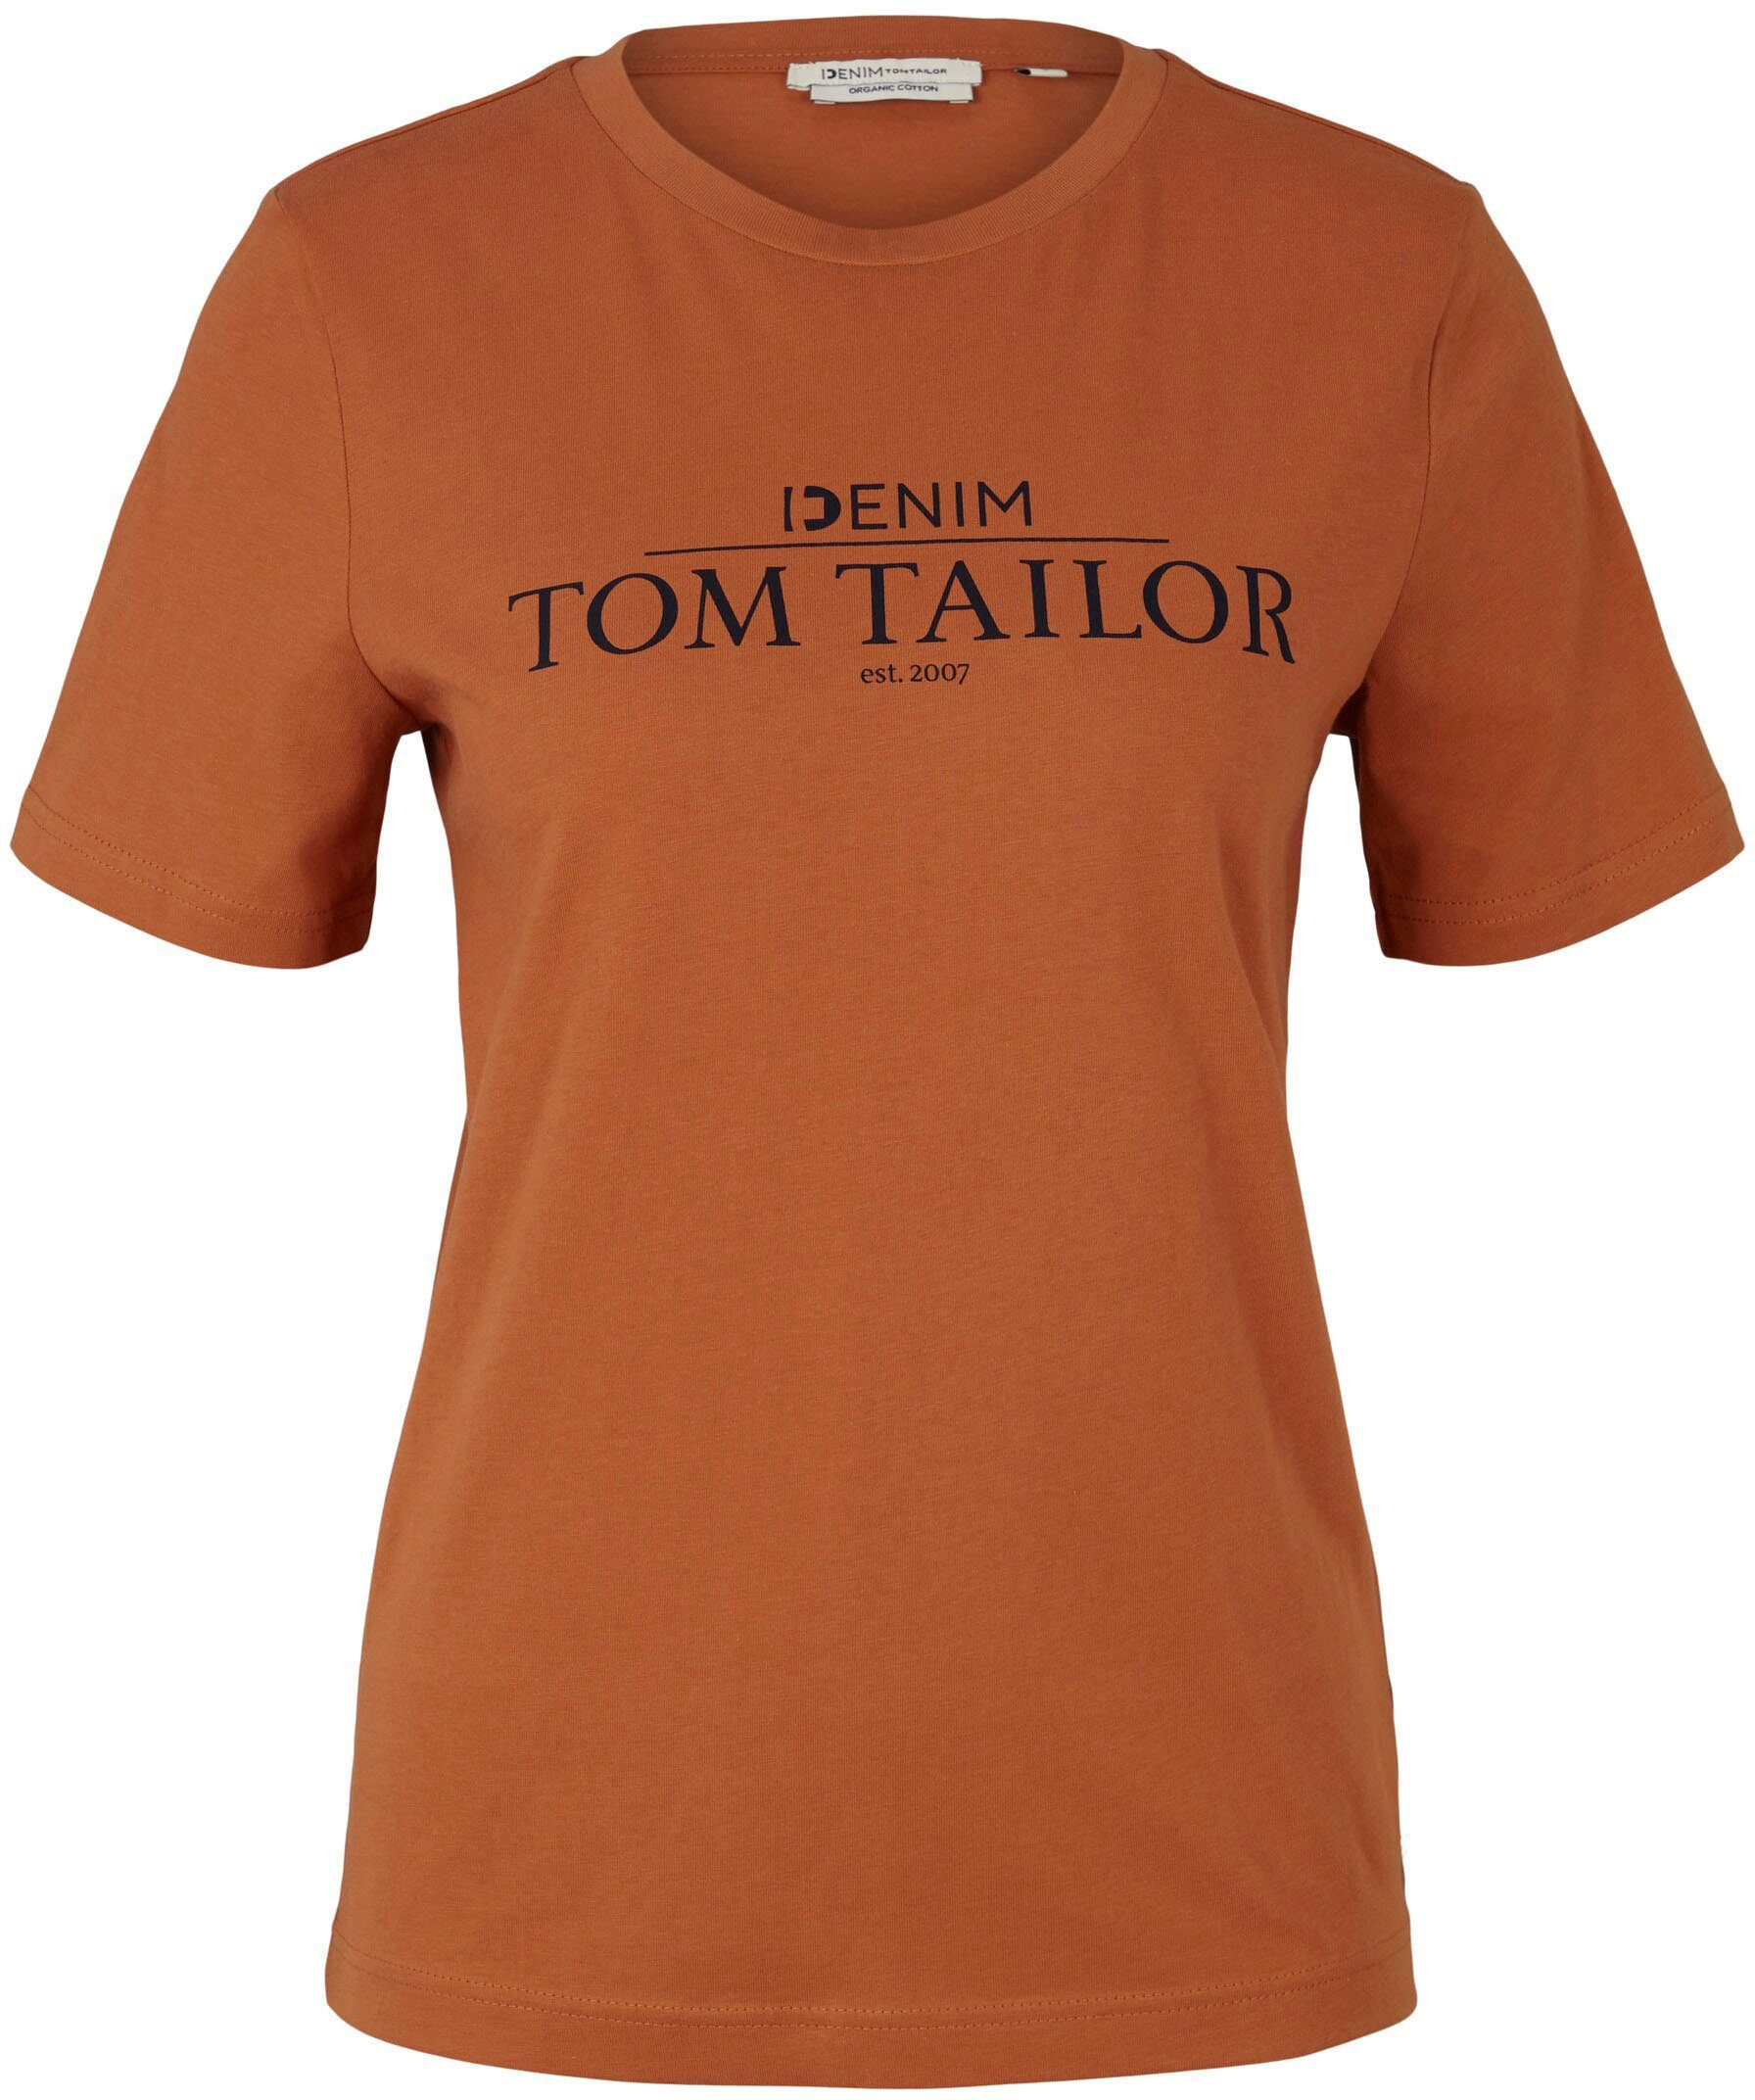 TOM TAILOR der T-Shirt Print Brust amber Logo Denim mit auf